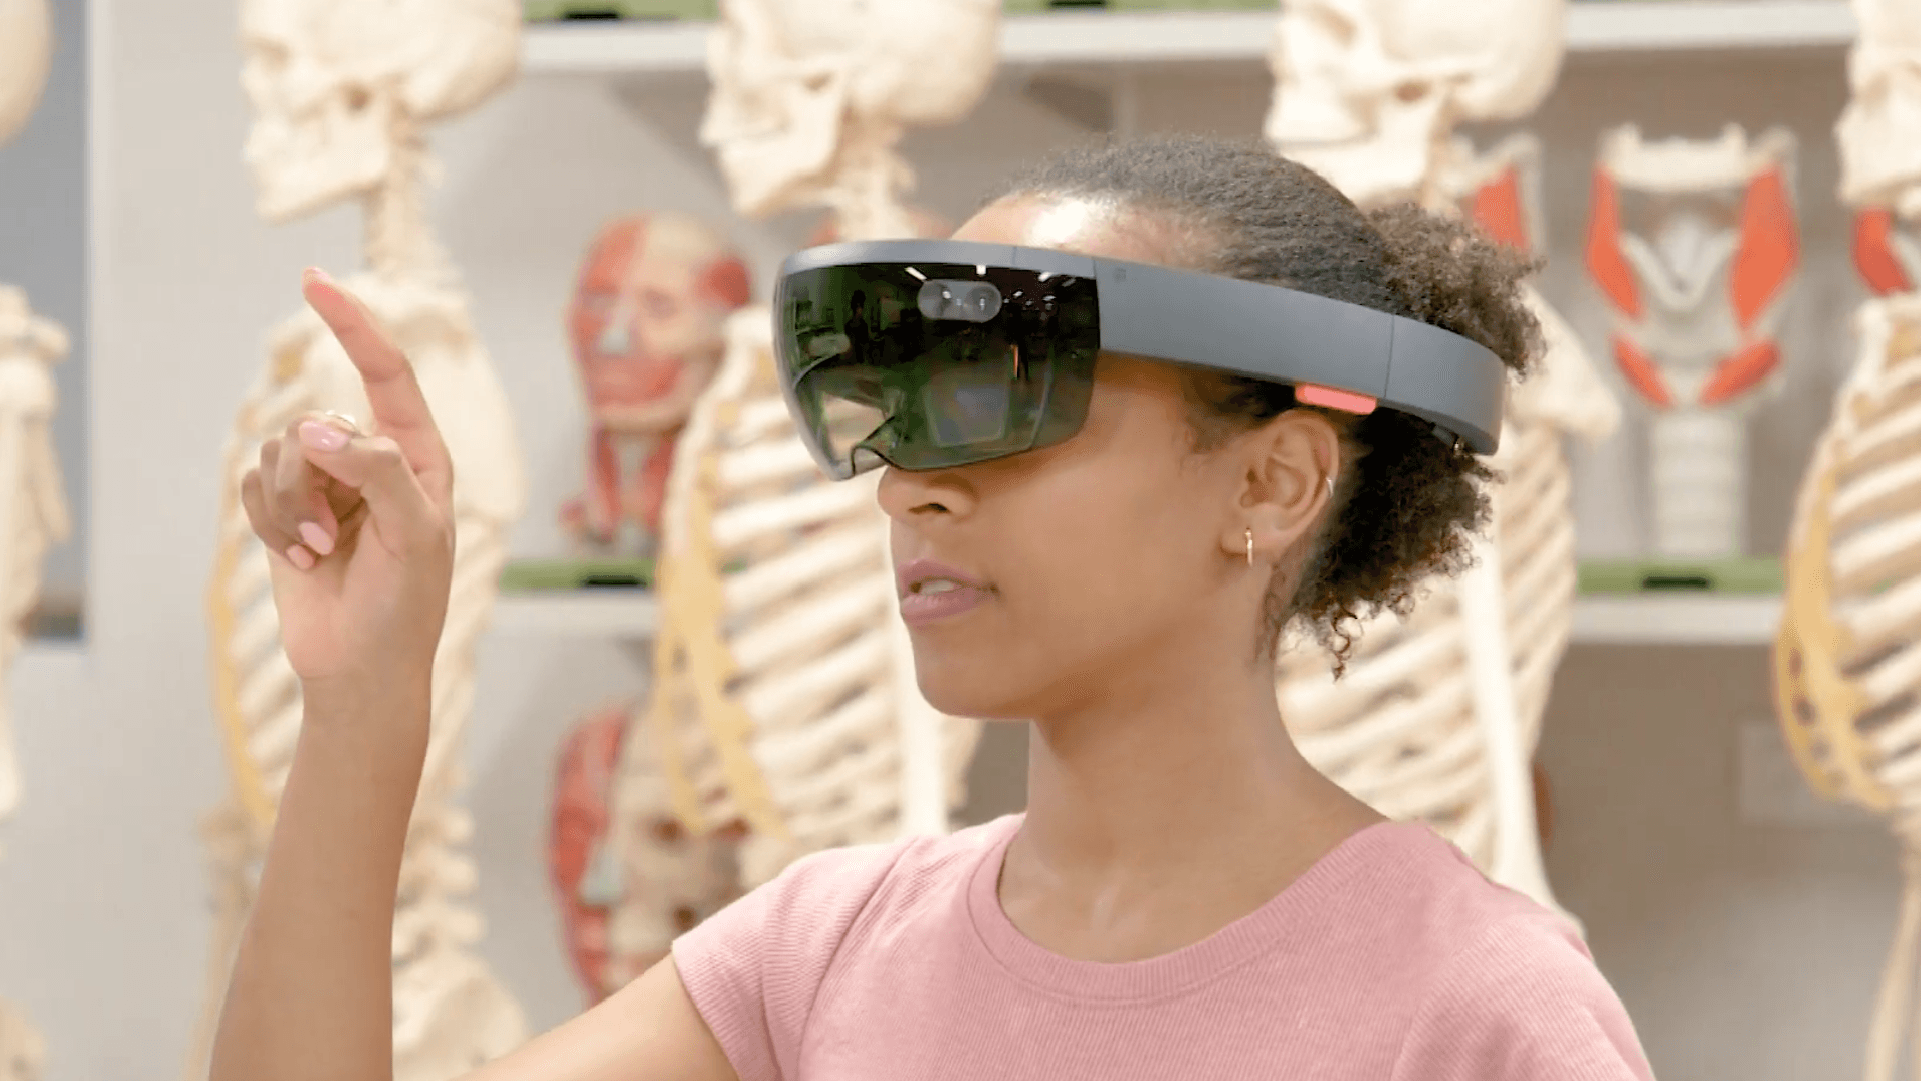 Студент в очках смешанной реальности HoloLens с голограммой бьющегося человеческого сердца. Источник: youtube.com/watch?v=8FkyI5912w8